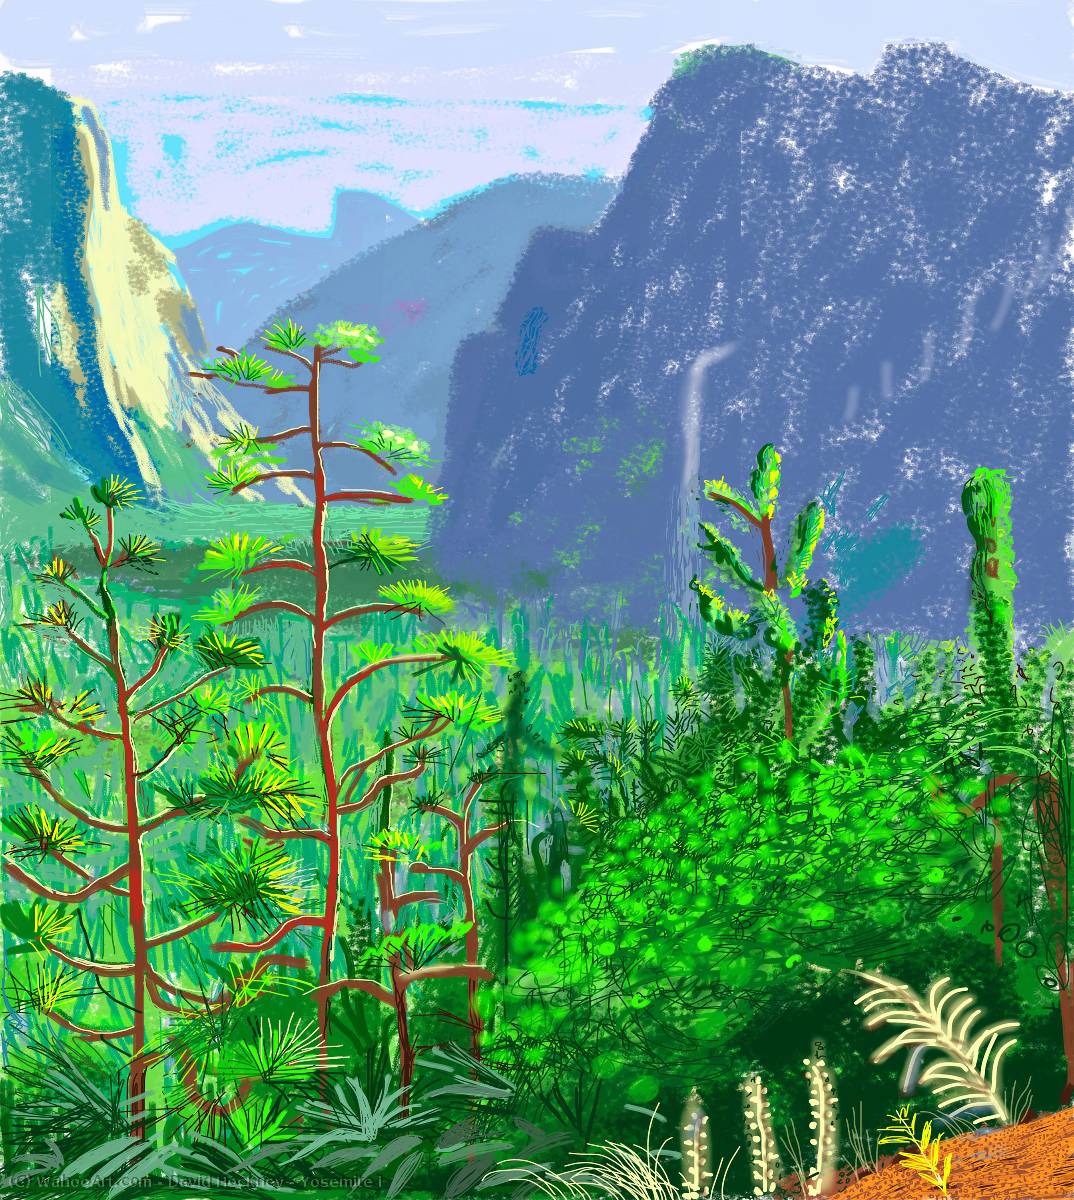 David-Hockney-Yosemite-i